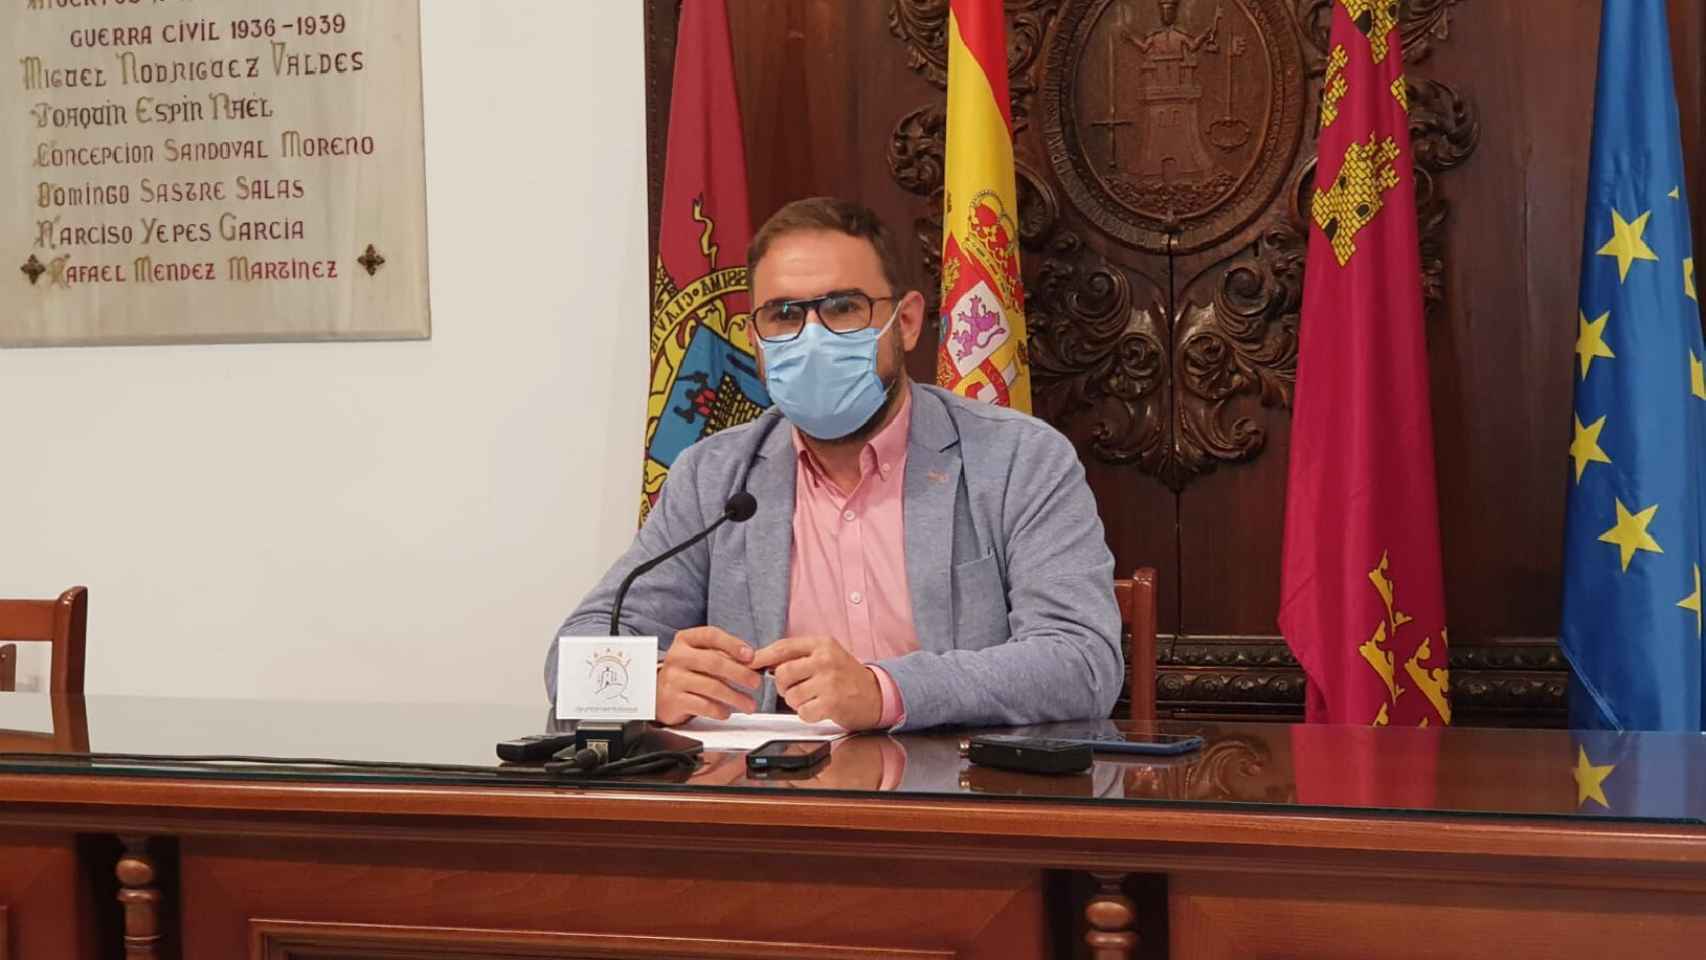 El alcalde de Lorca, el socialista Diego José Mateos, es uno de los tres regidores que ha declinado ofrecer edificios públicos a los inmigrantes.